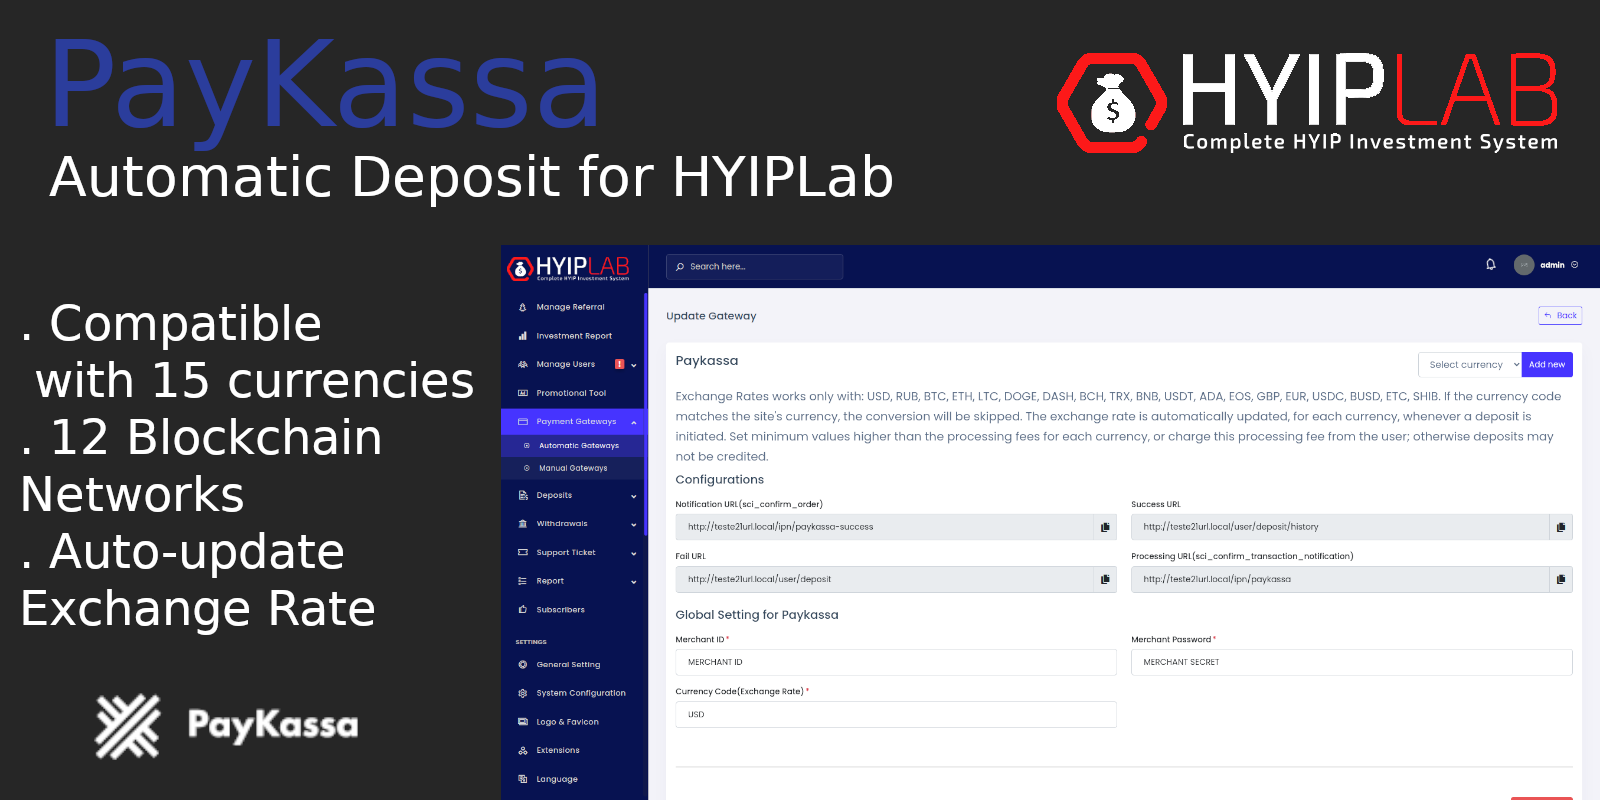 PayKassa Automatic Deposit Gateway for HYIPLab